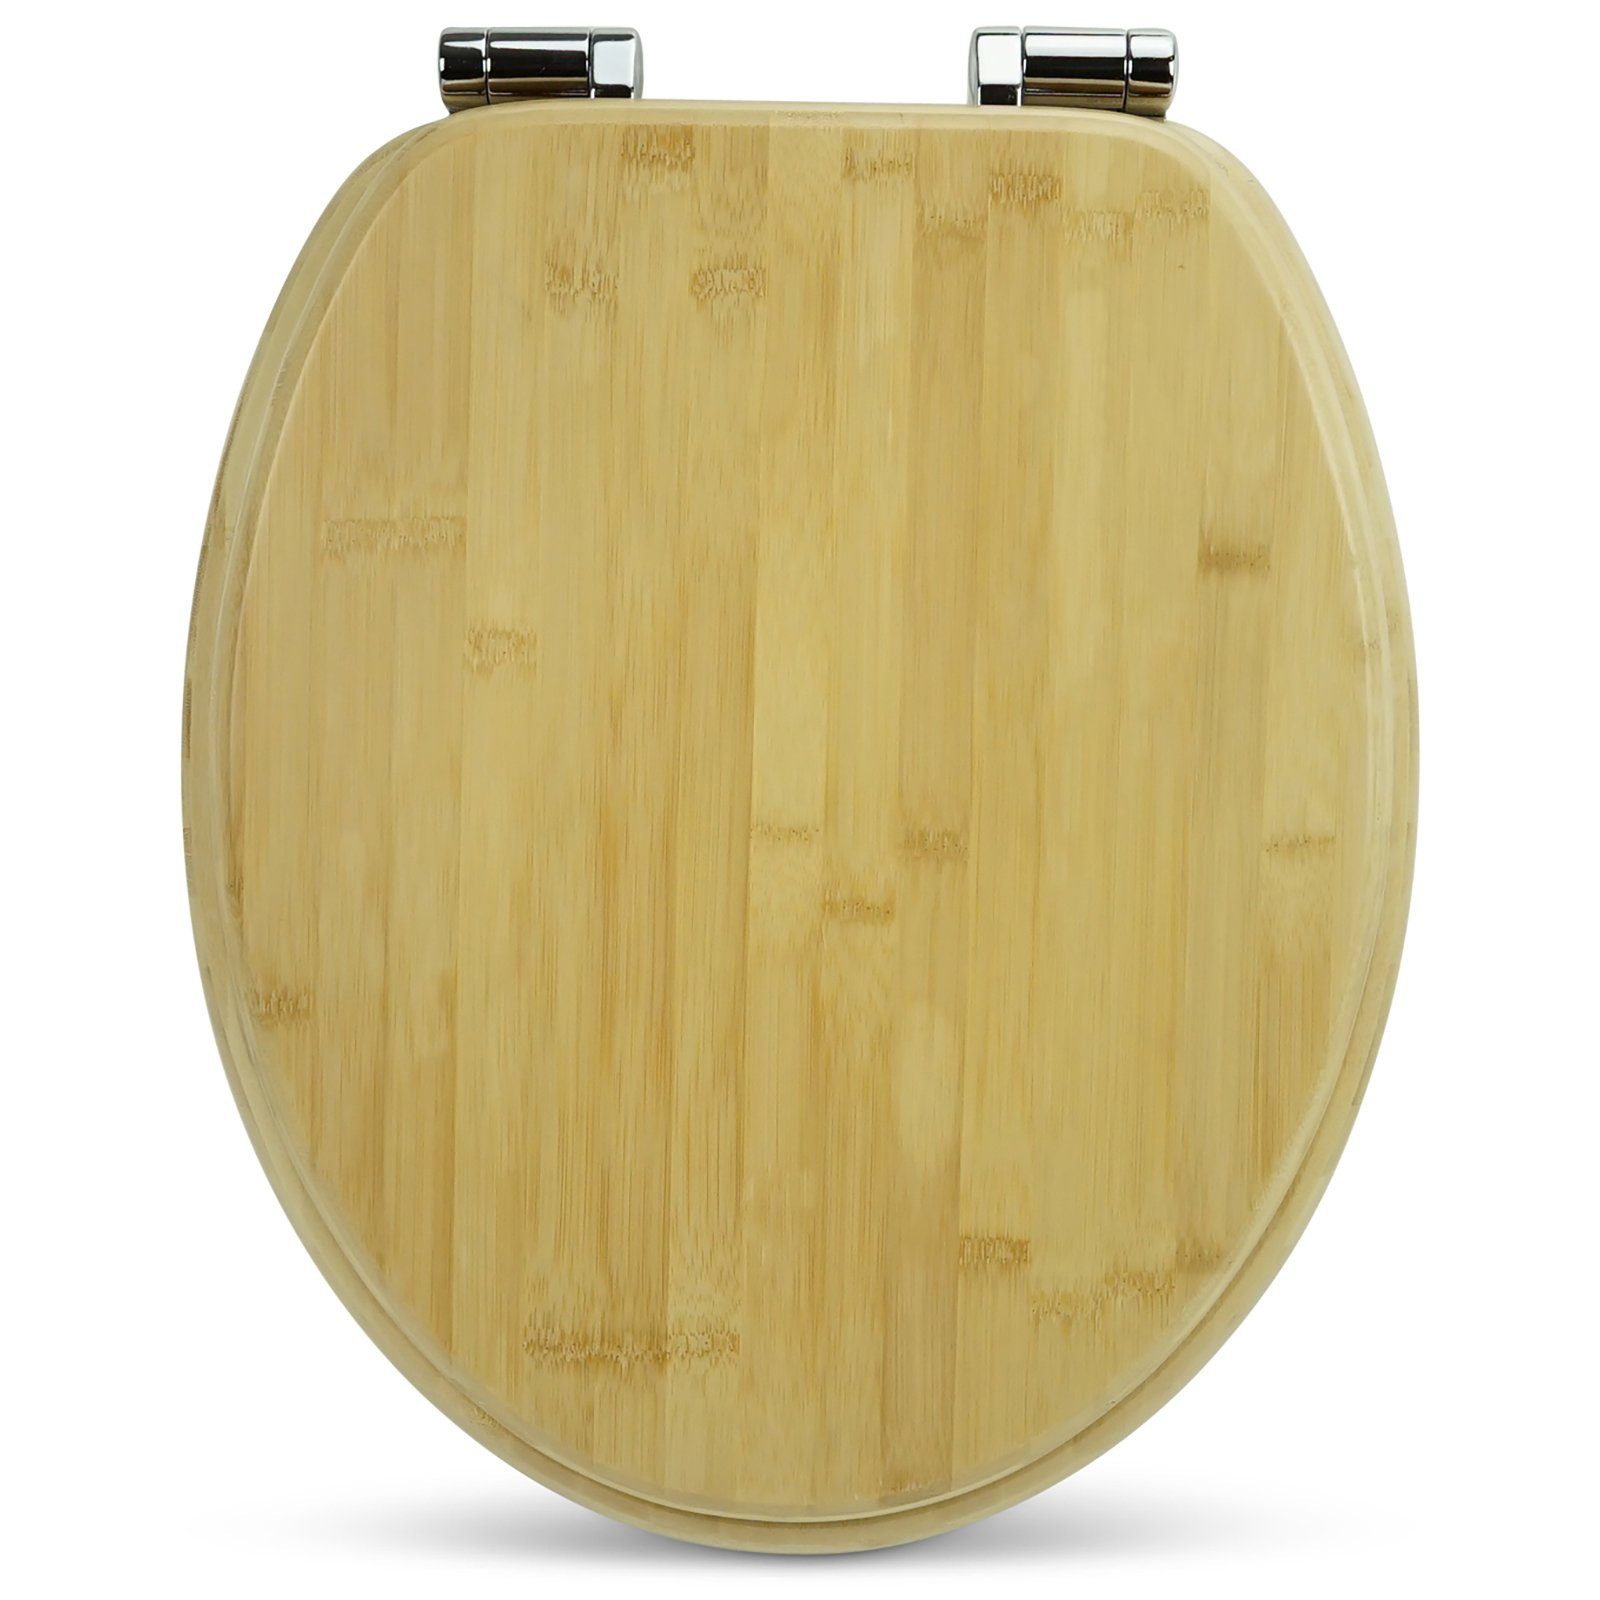 Sanfino WC-Sitz "Brown" Premium Toilettendeckel mit Absenkautomatik aus  Bambus, in edler Holz-Optik, hohem Sitzkomfort, einfache Montage